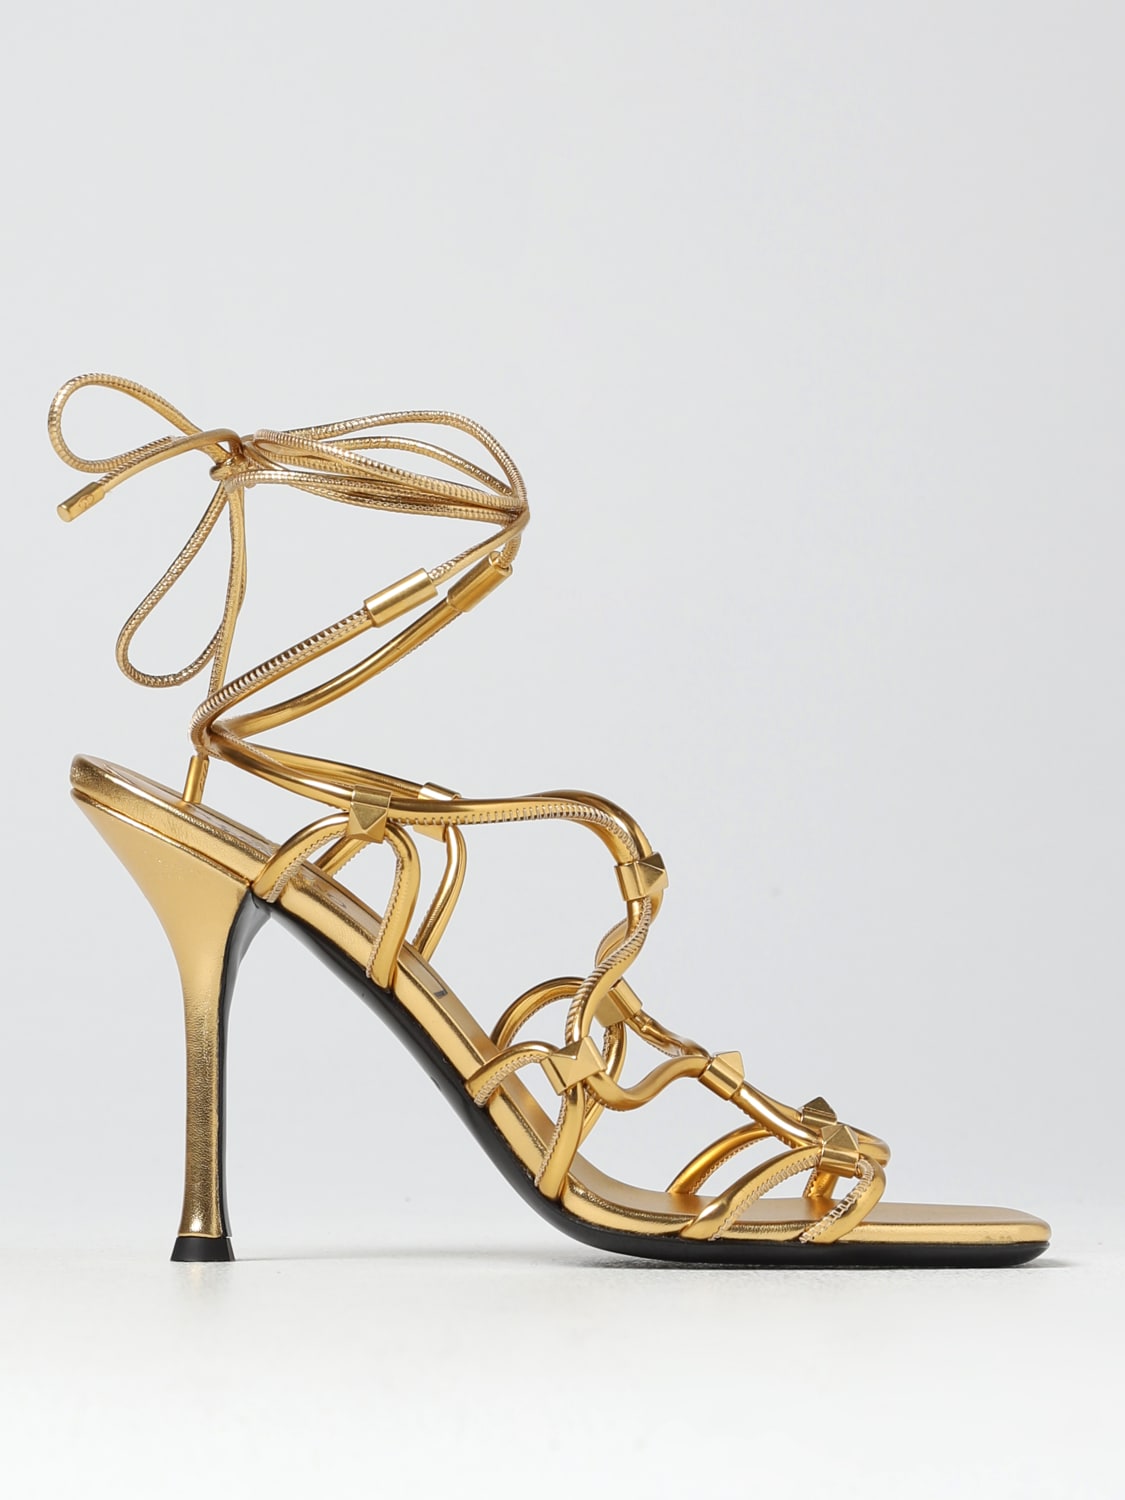 Rockstud Net Leather Sandals in Gold - Valentino Garavani